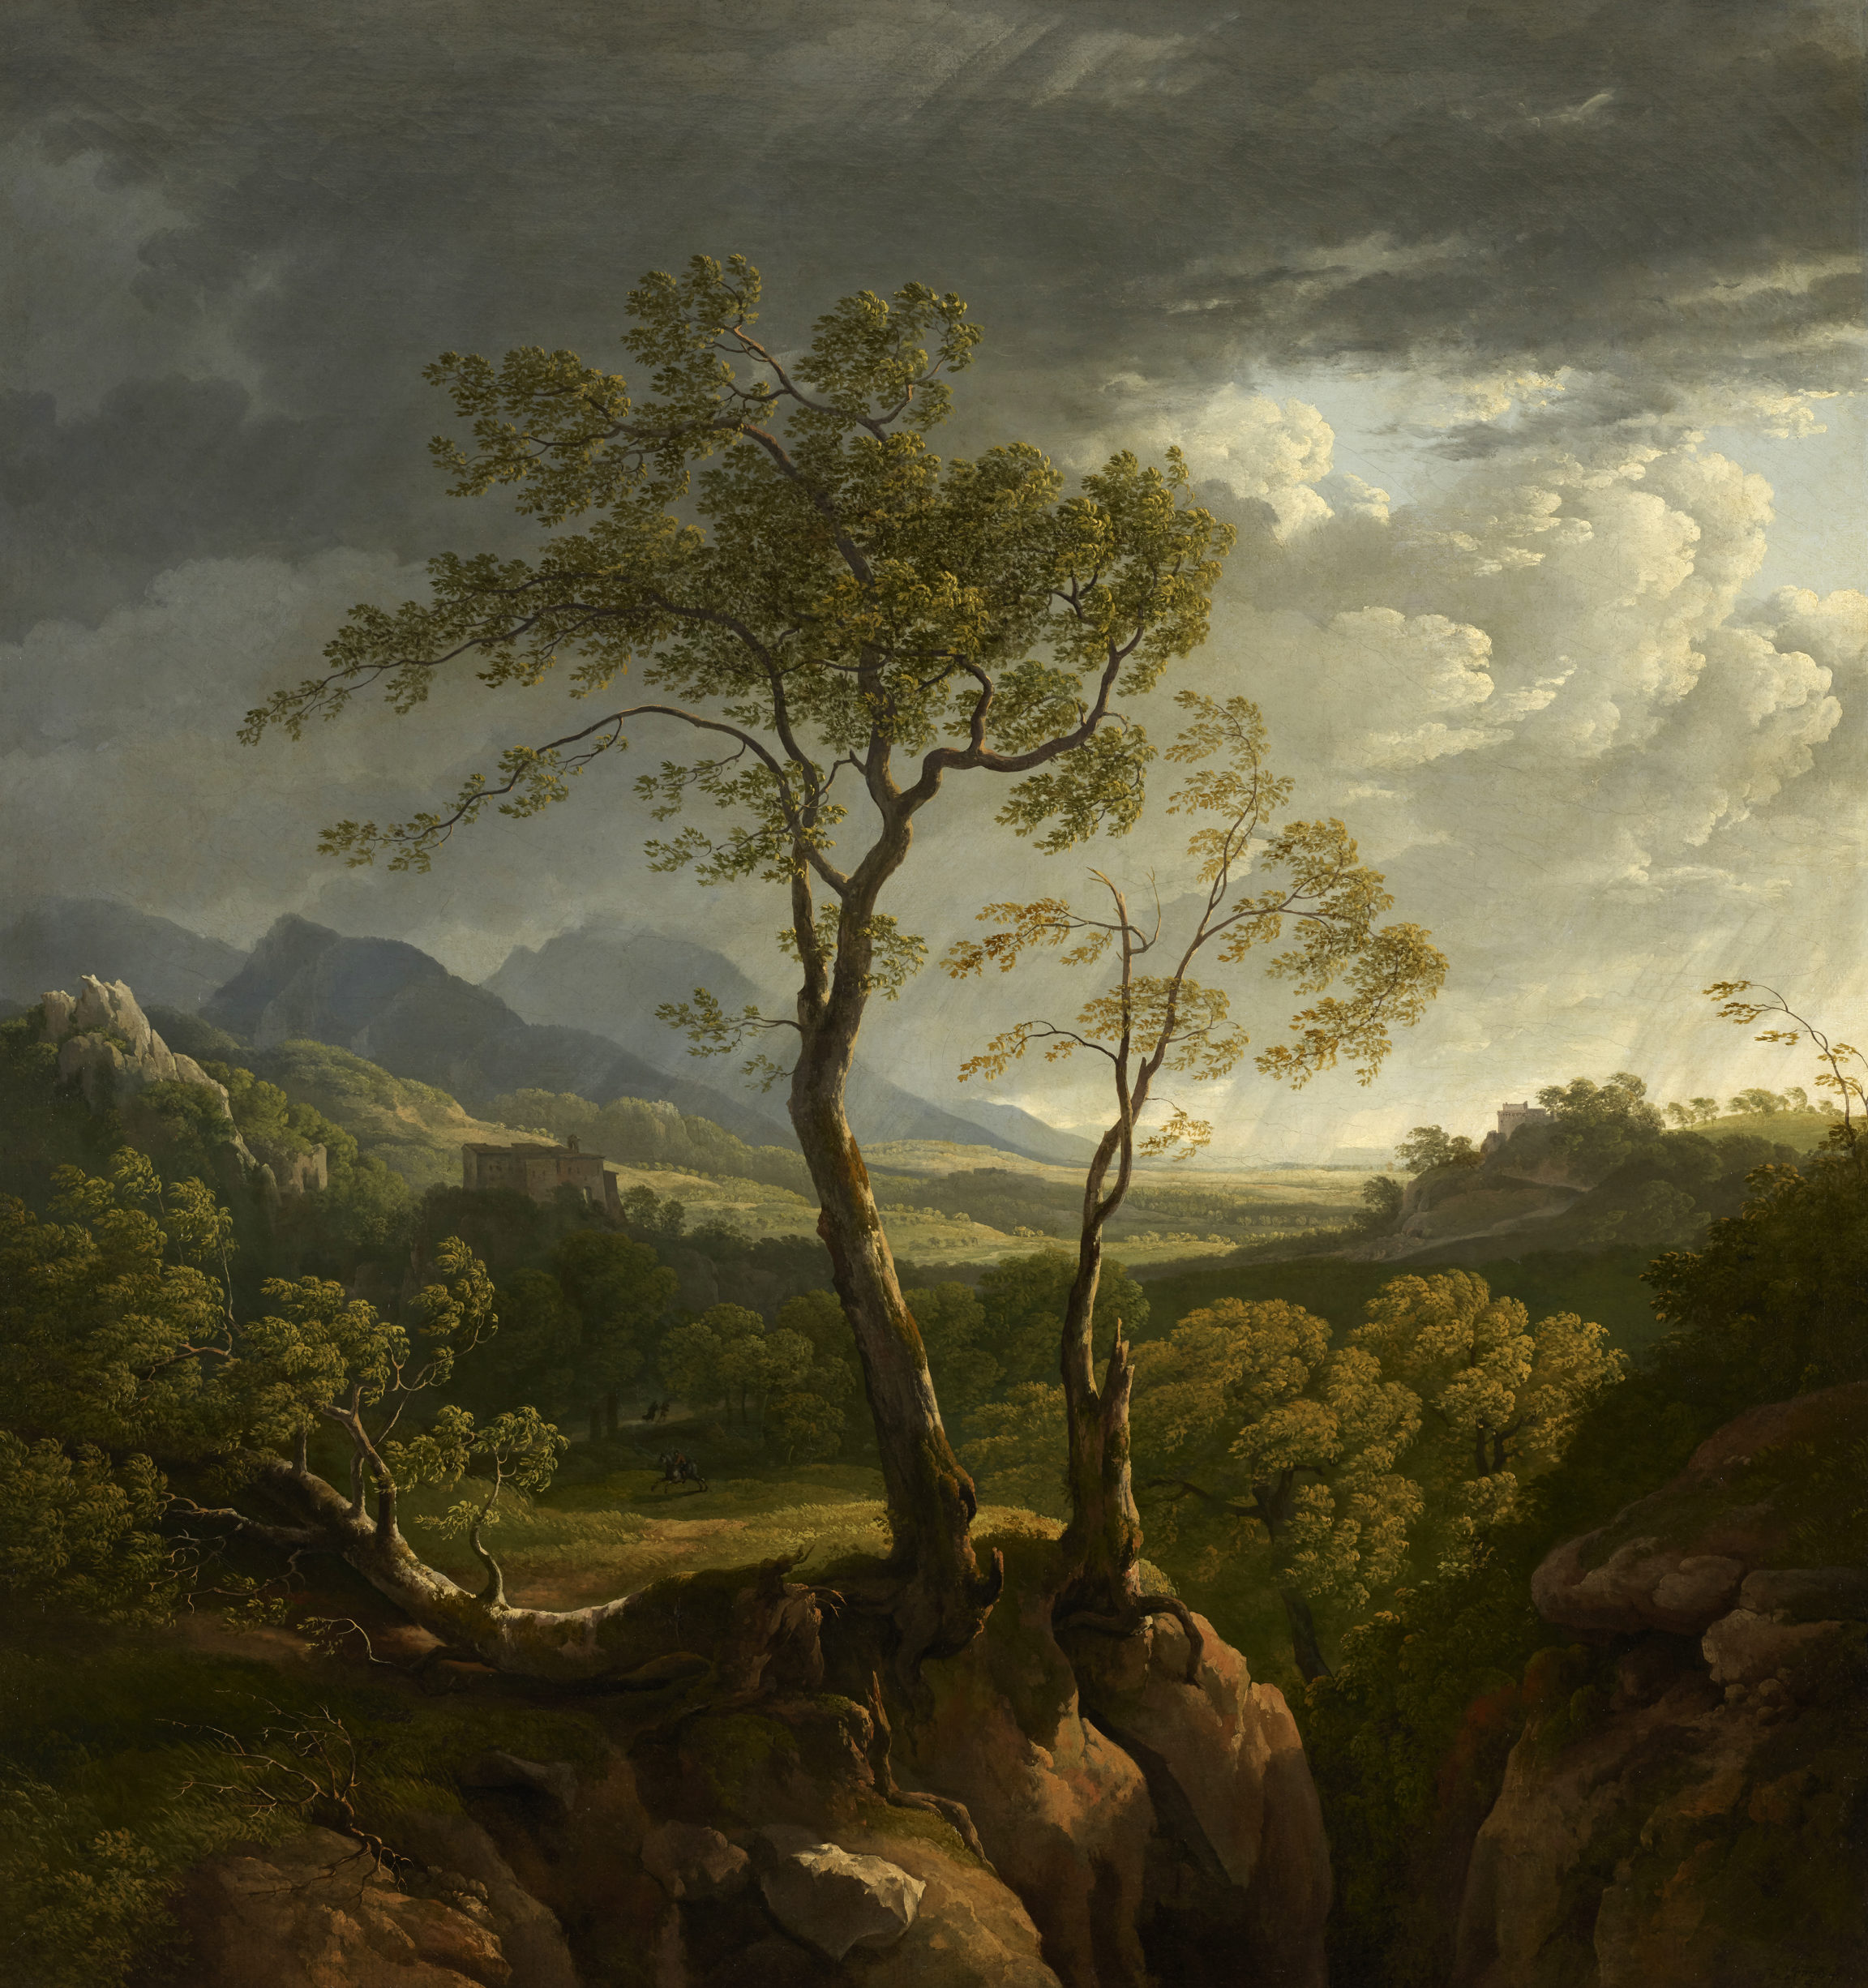 Hendrik Voogd , Campagne romaine sous un ciel d’orage, vers 1800